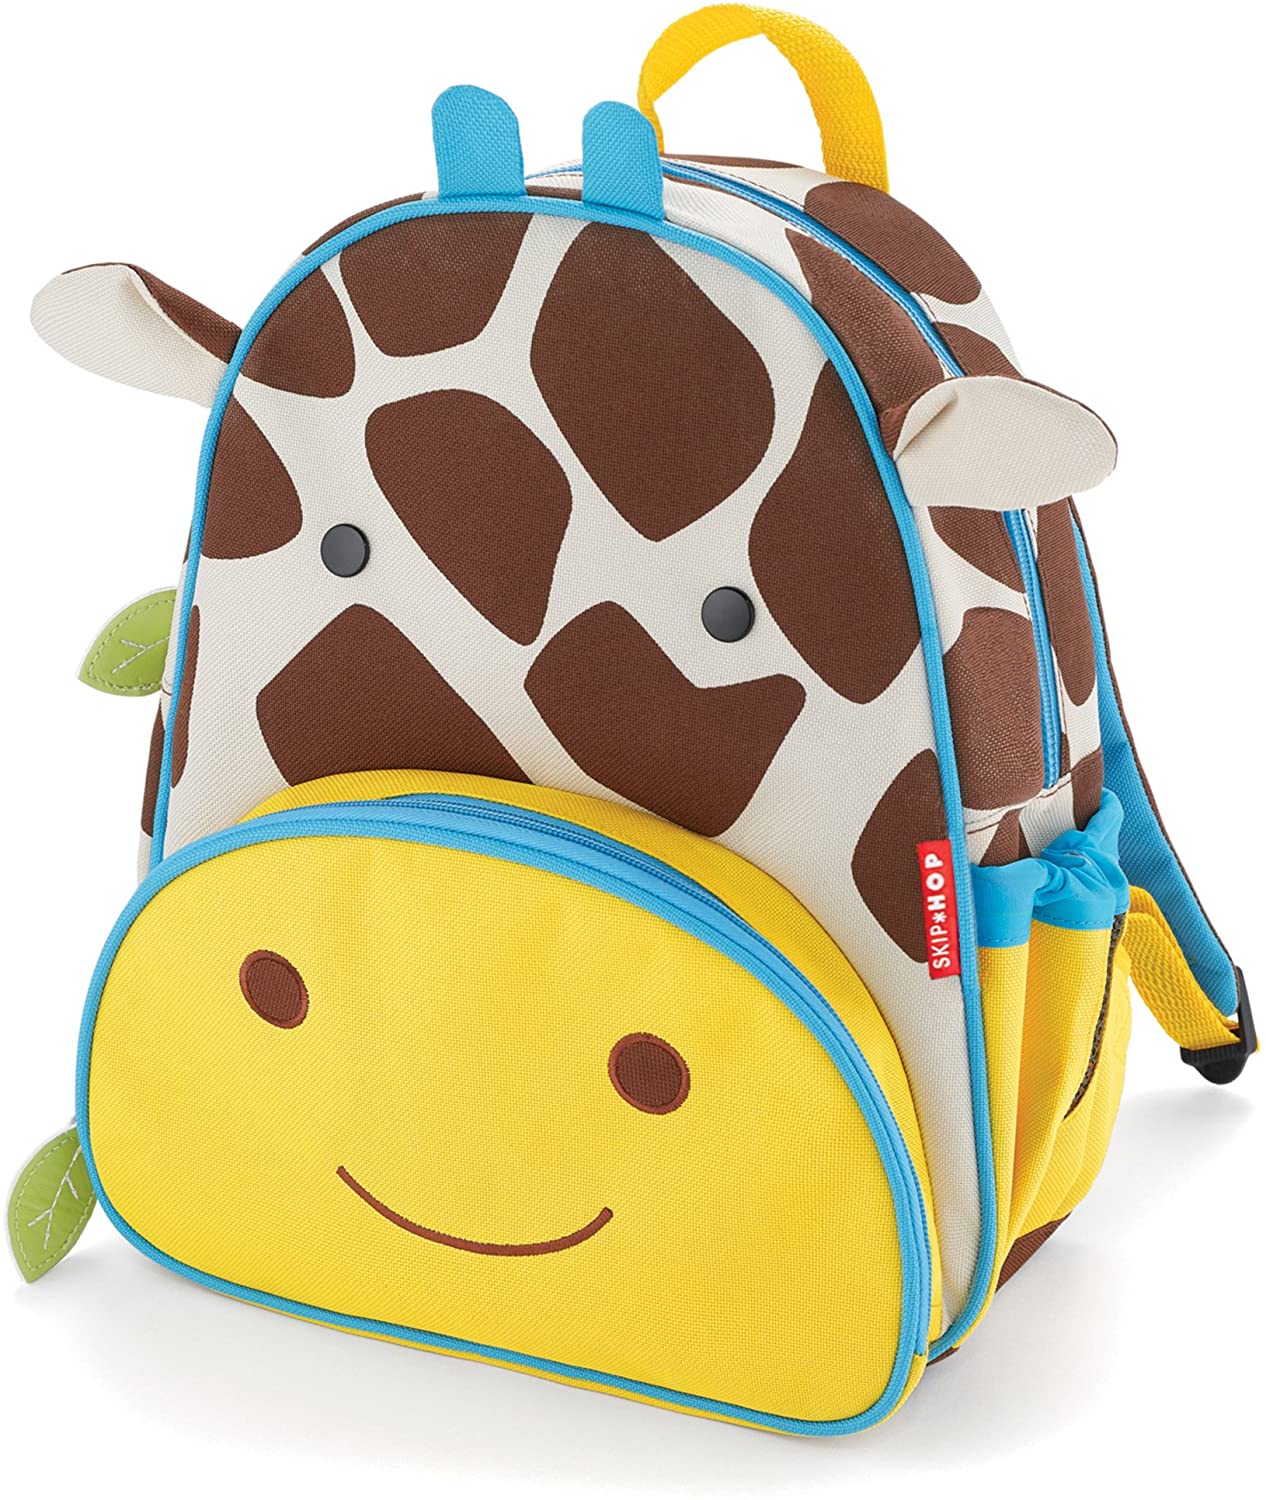 Goofy Giraffe Backpack for Toddlers